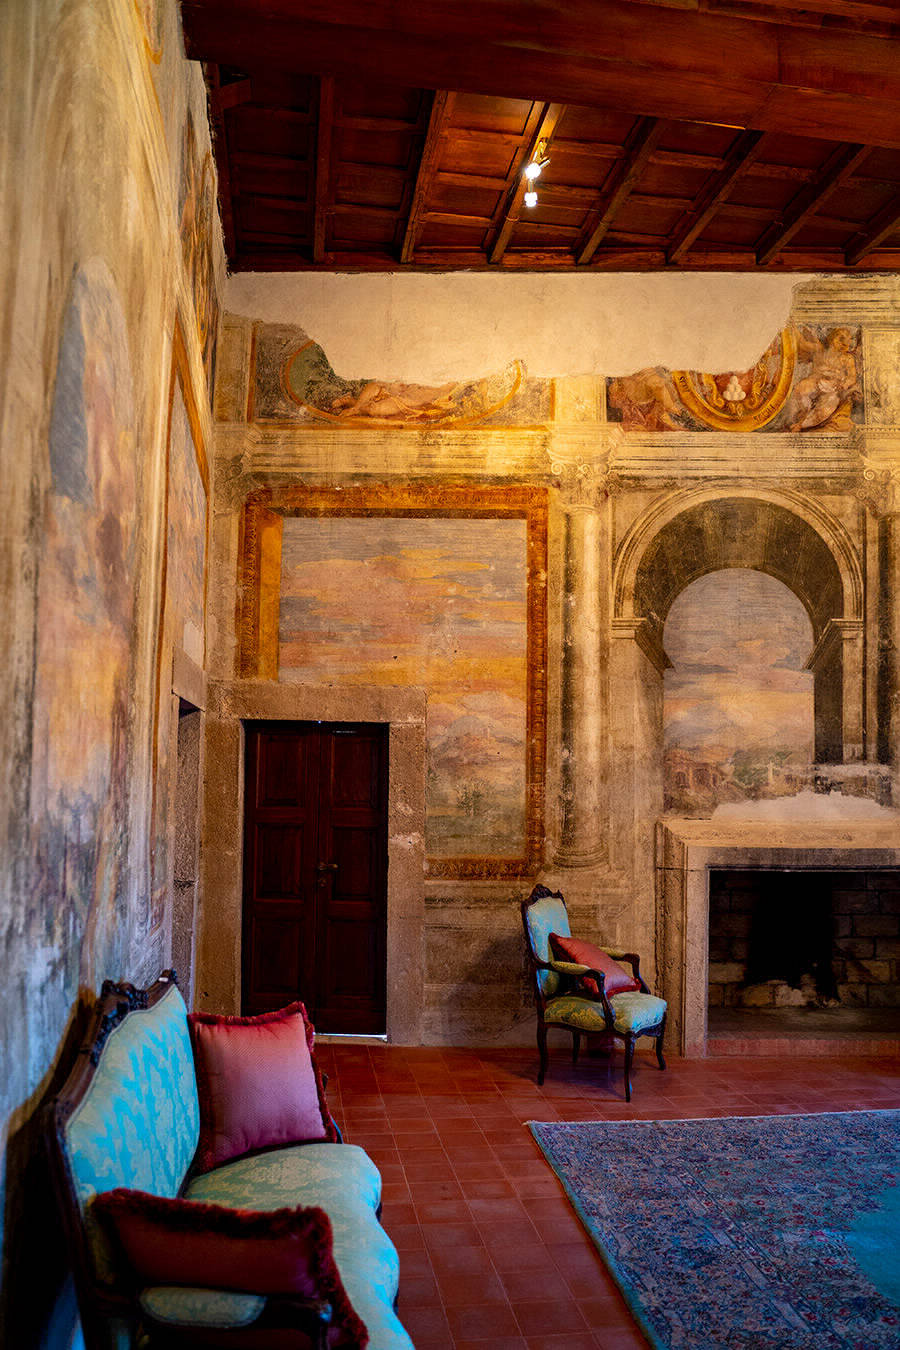 Panoramica lato sinistro - Castello Orsini-Cesi -Borghese ospitalità, cultura al centro dell'antico borgo.